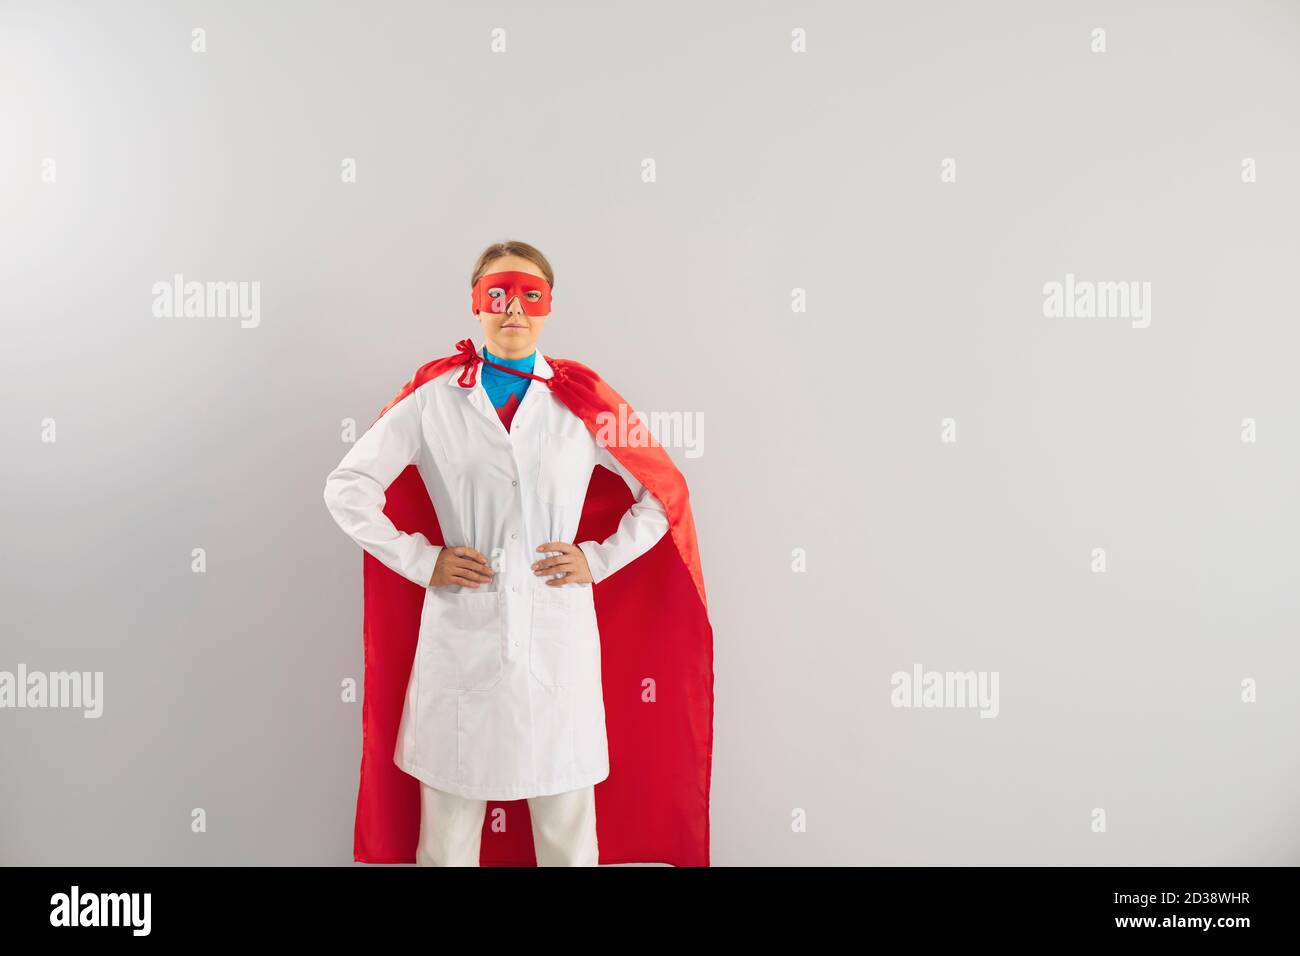 Femme médecin en costume de super-héros sur fond gris. Une superfemme en cape rouge et un masque protégeant la santé publique Banque D'Images